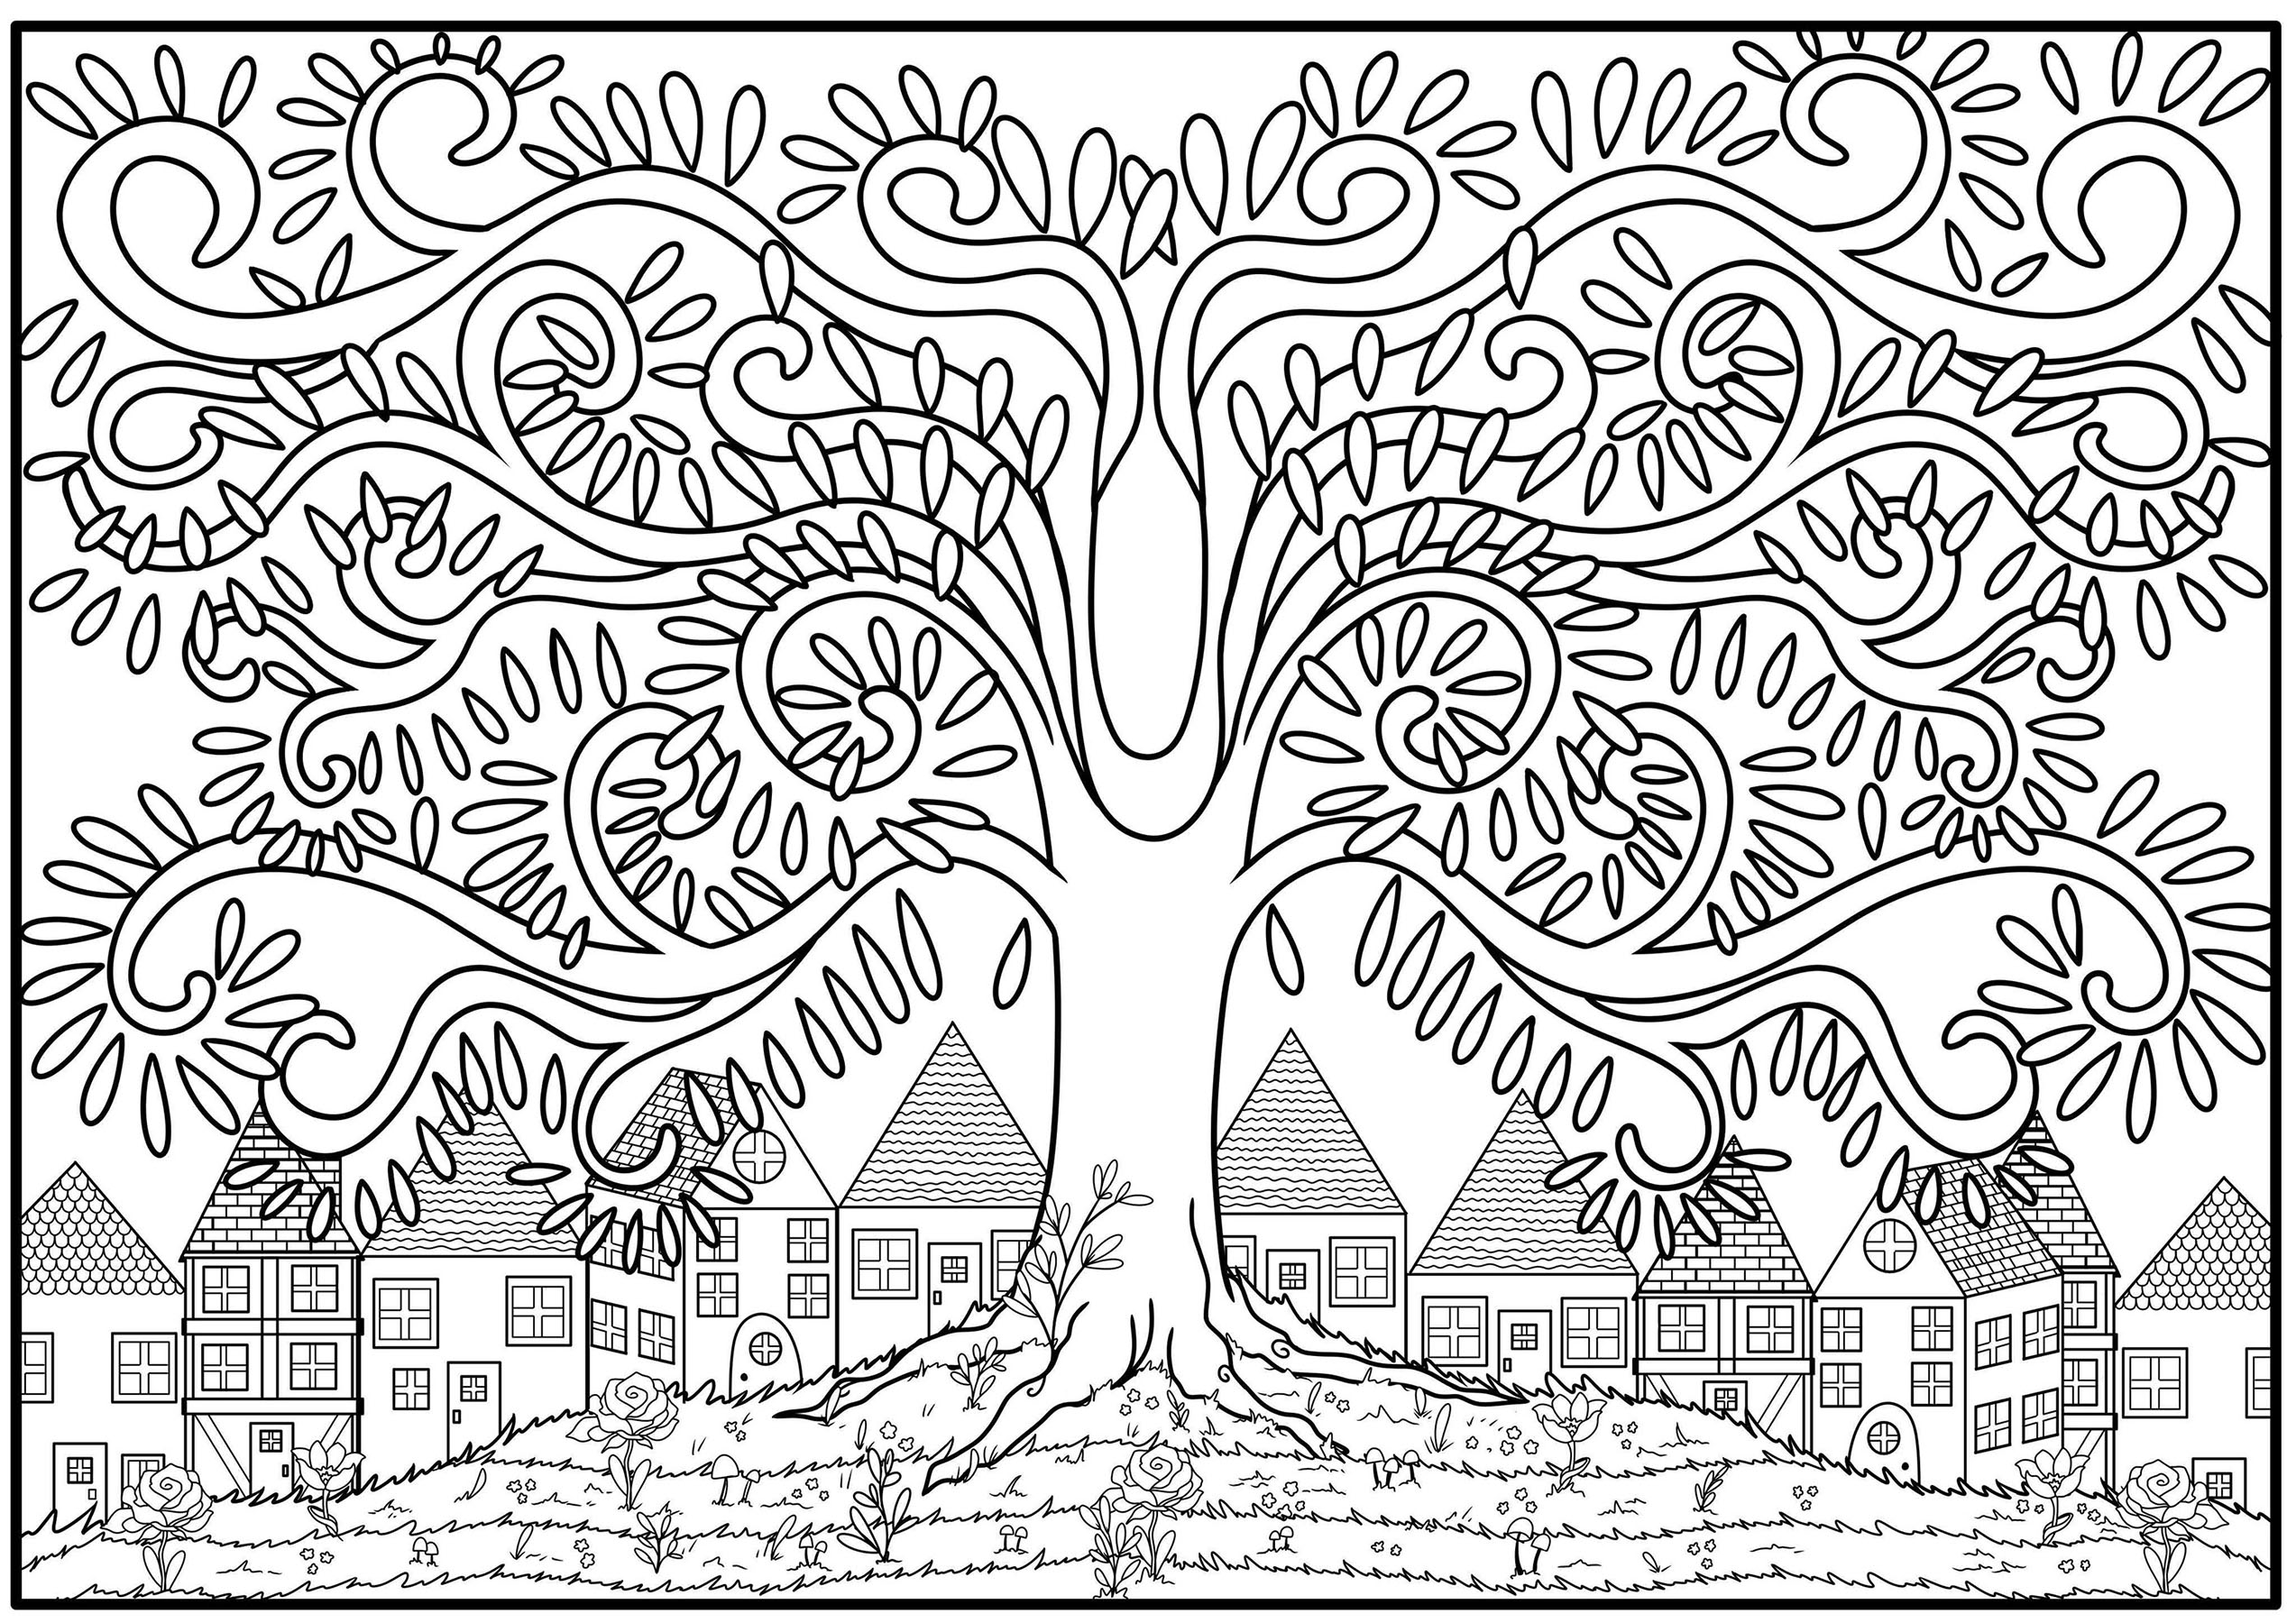 Pagina da colorare di un albero con ramo a forma di arabesco, in cima a una collina fiorita con case sullo sfondo.